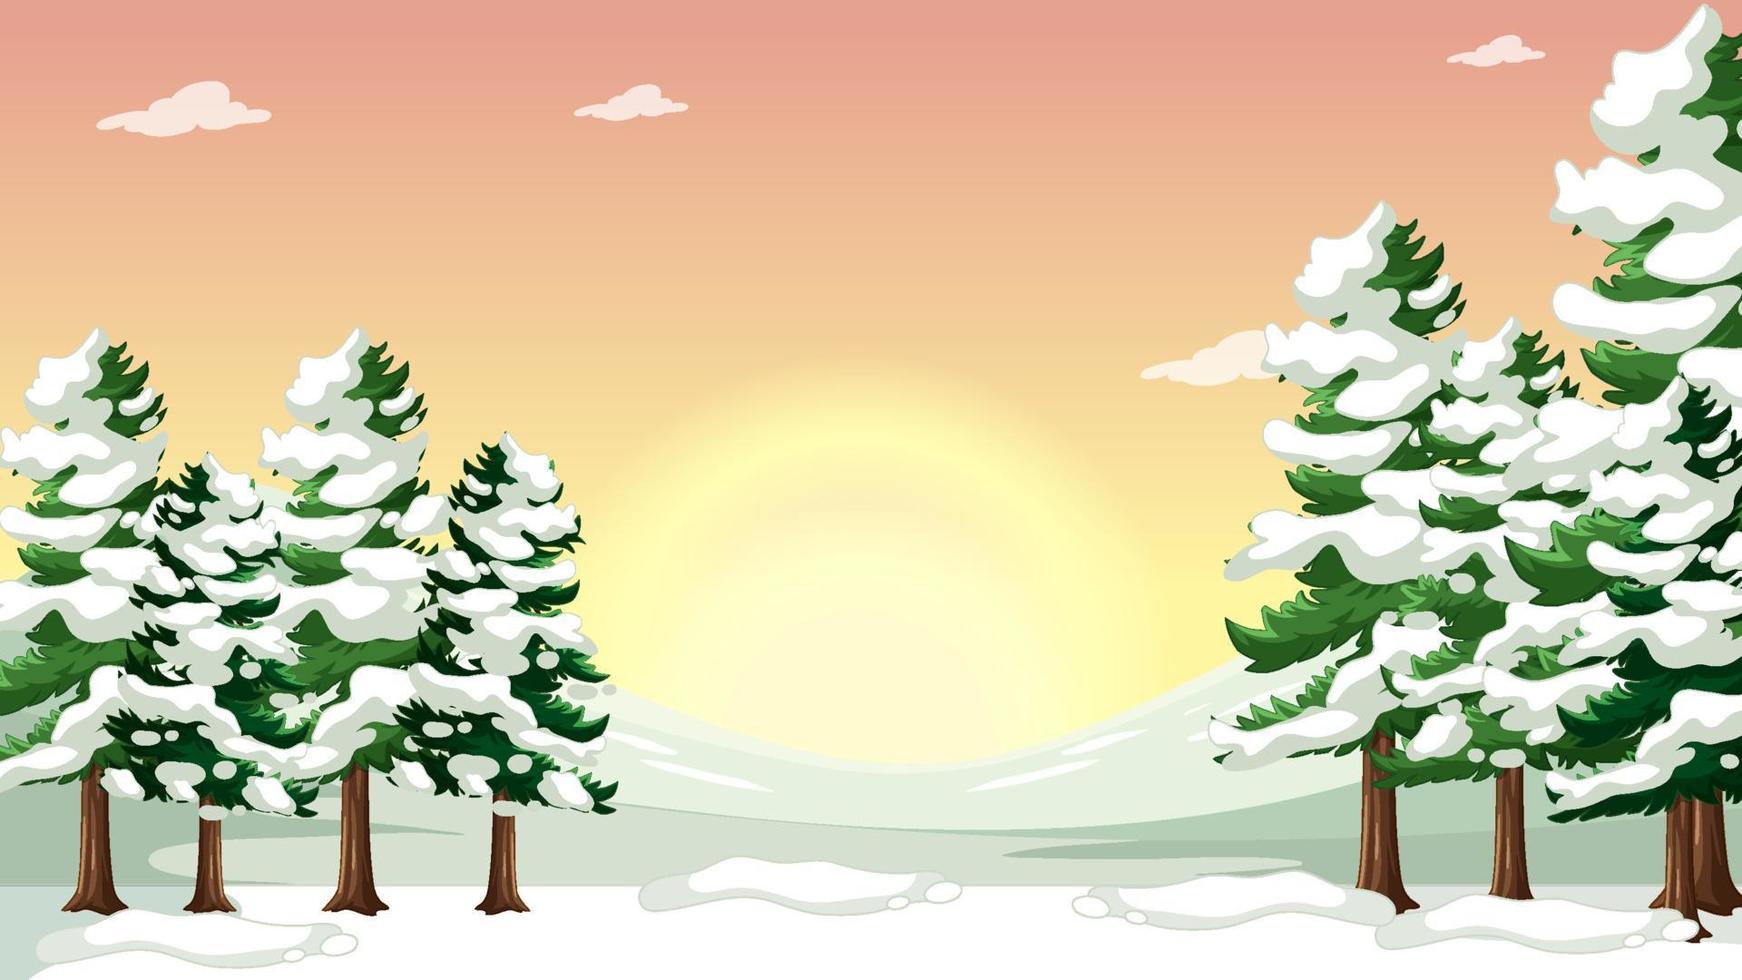 Thumbnail-Design mit schneebedeckten Kiefern vektor